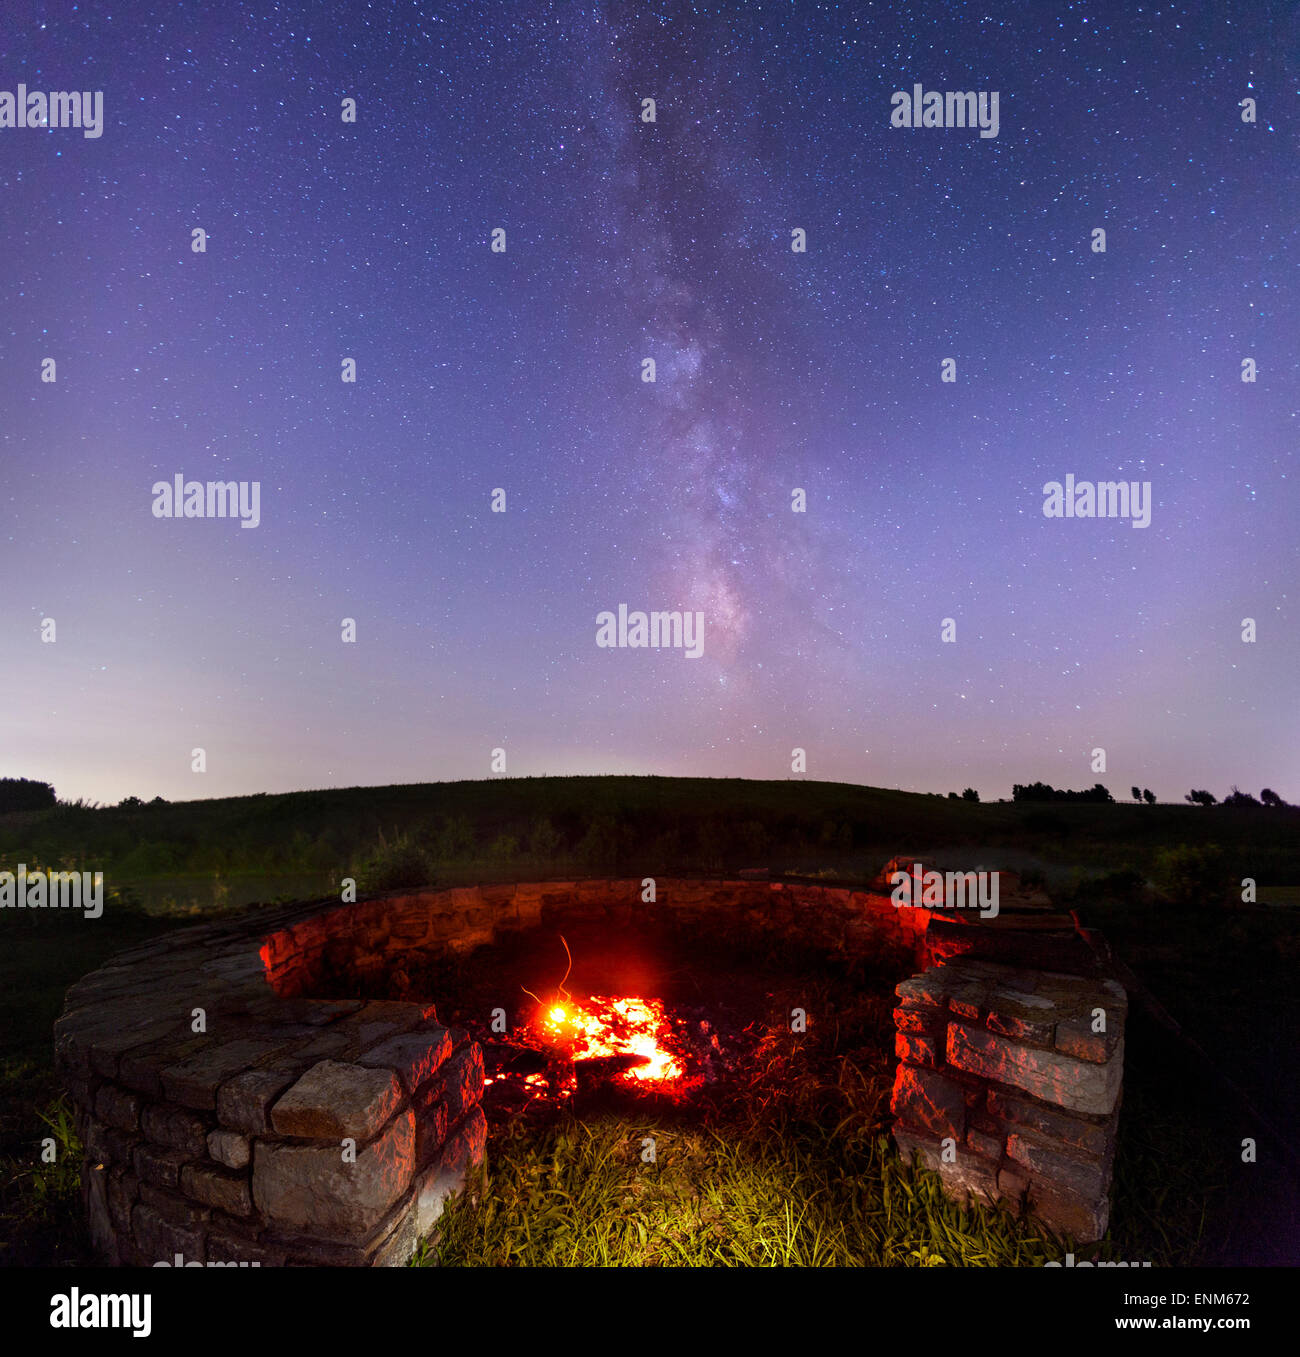 Pozo de fuego en el campo, con cielo estrellado en el fondo Foto de stock